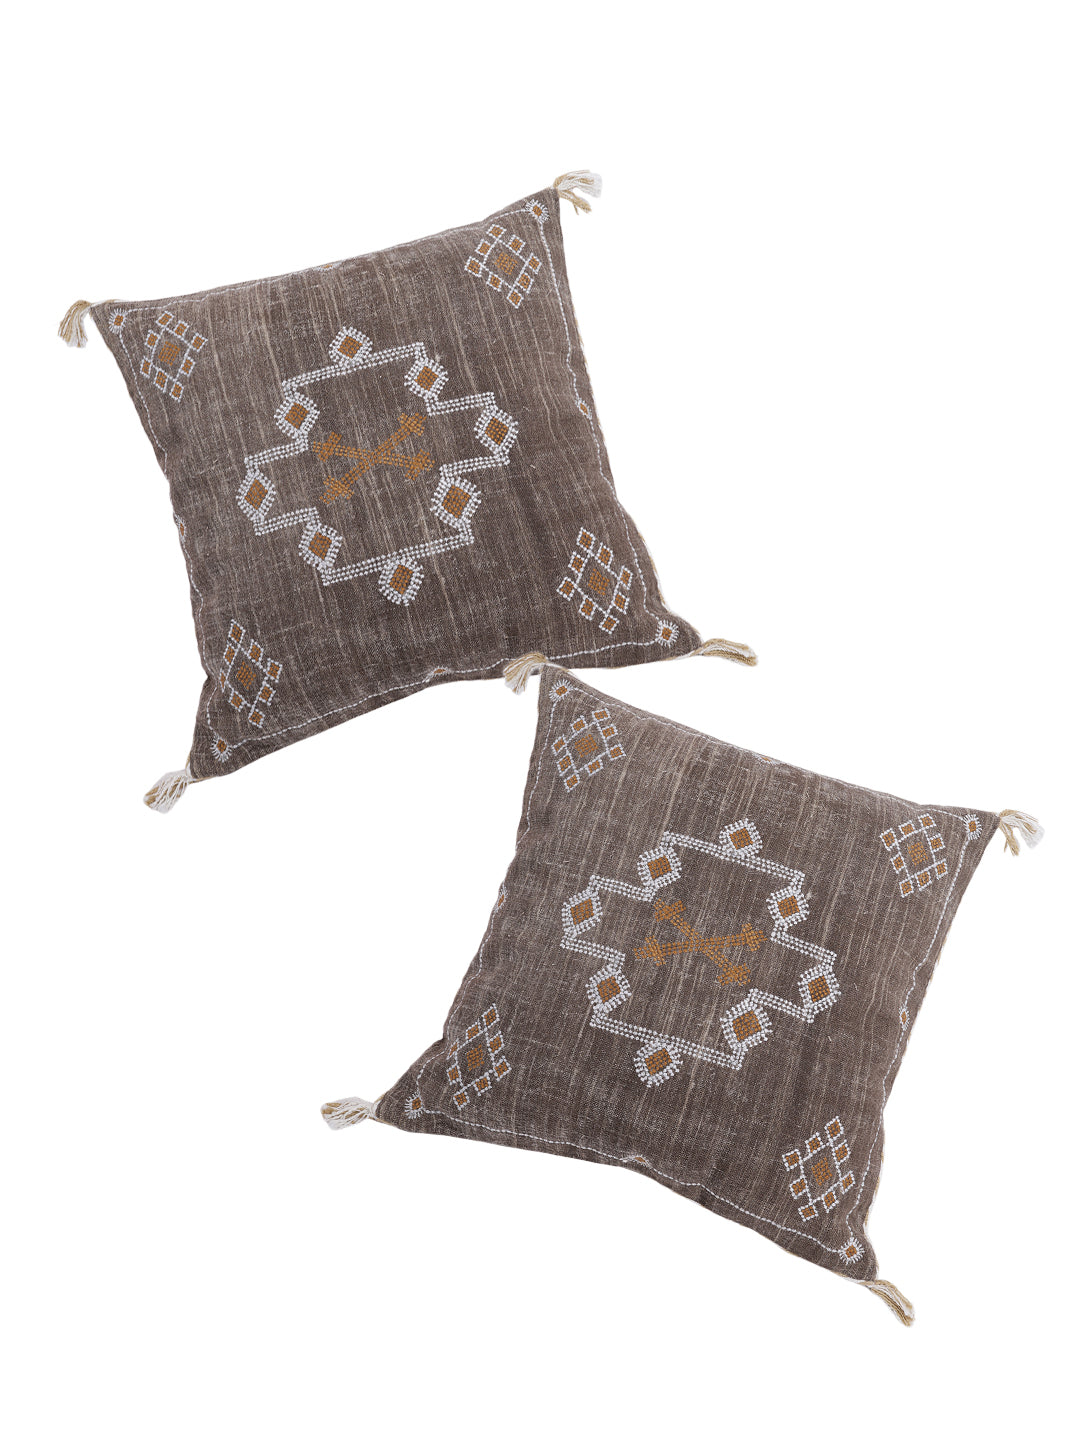 Set of 2 Sabra Silk Inspired Handmade 20 X 20 Linen Pillow Cover